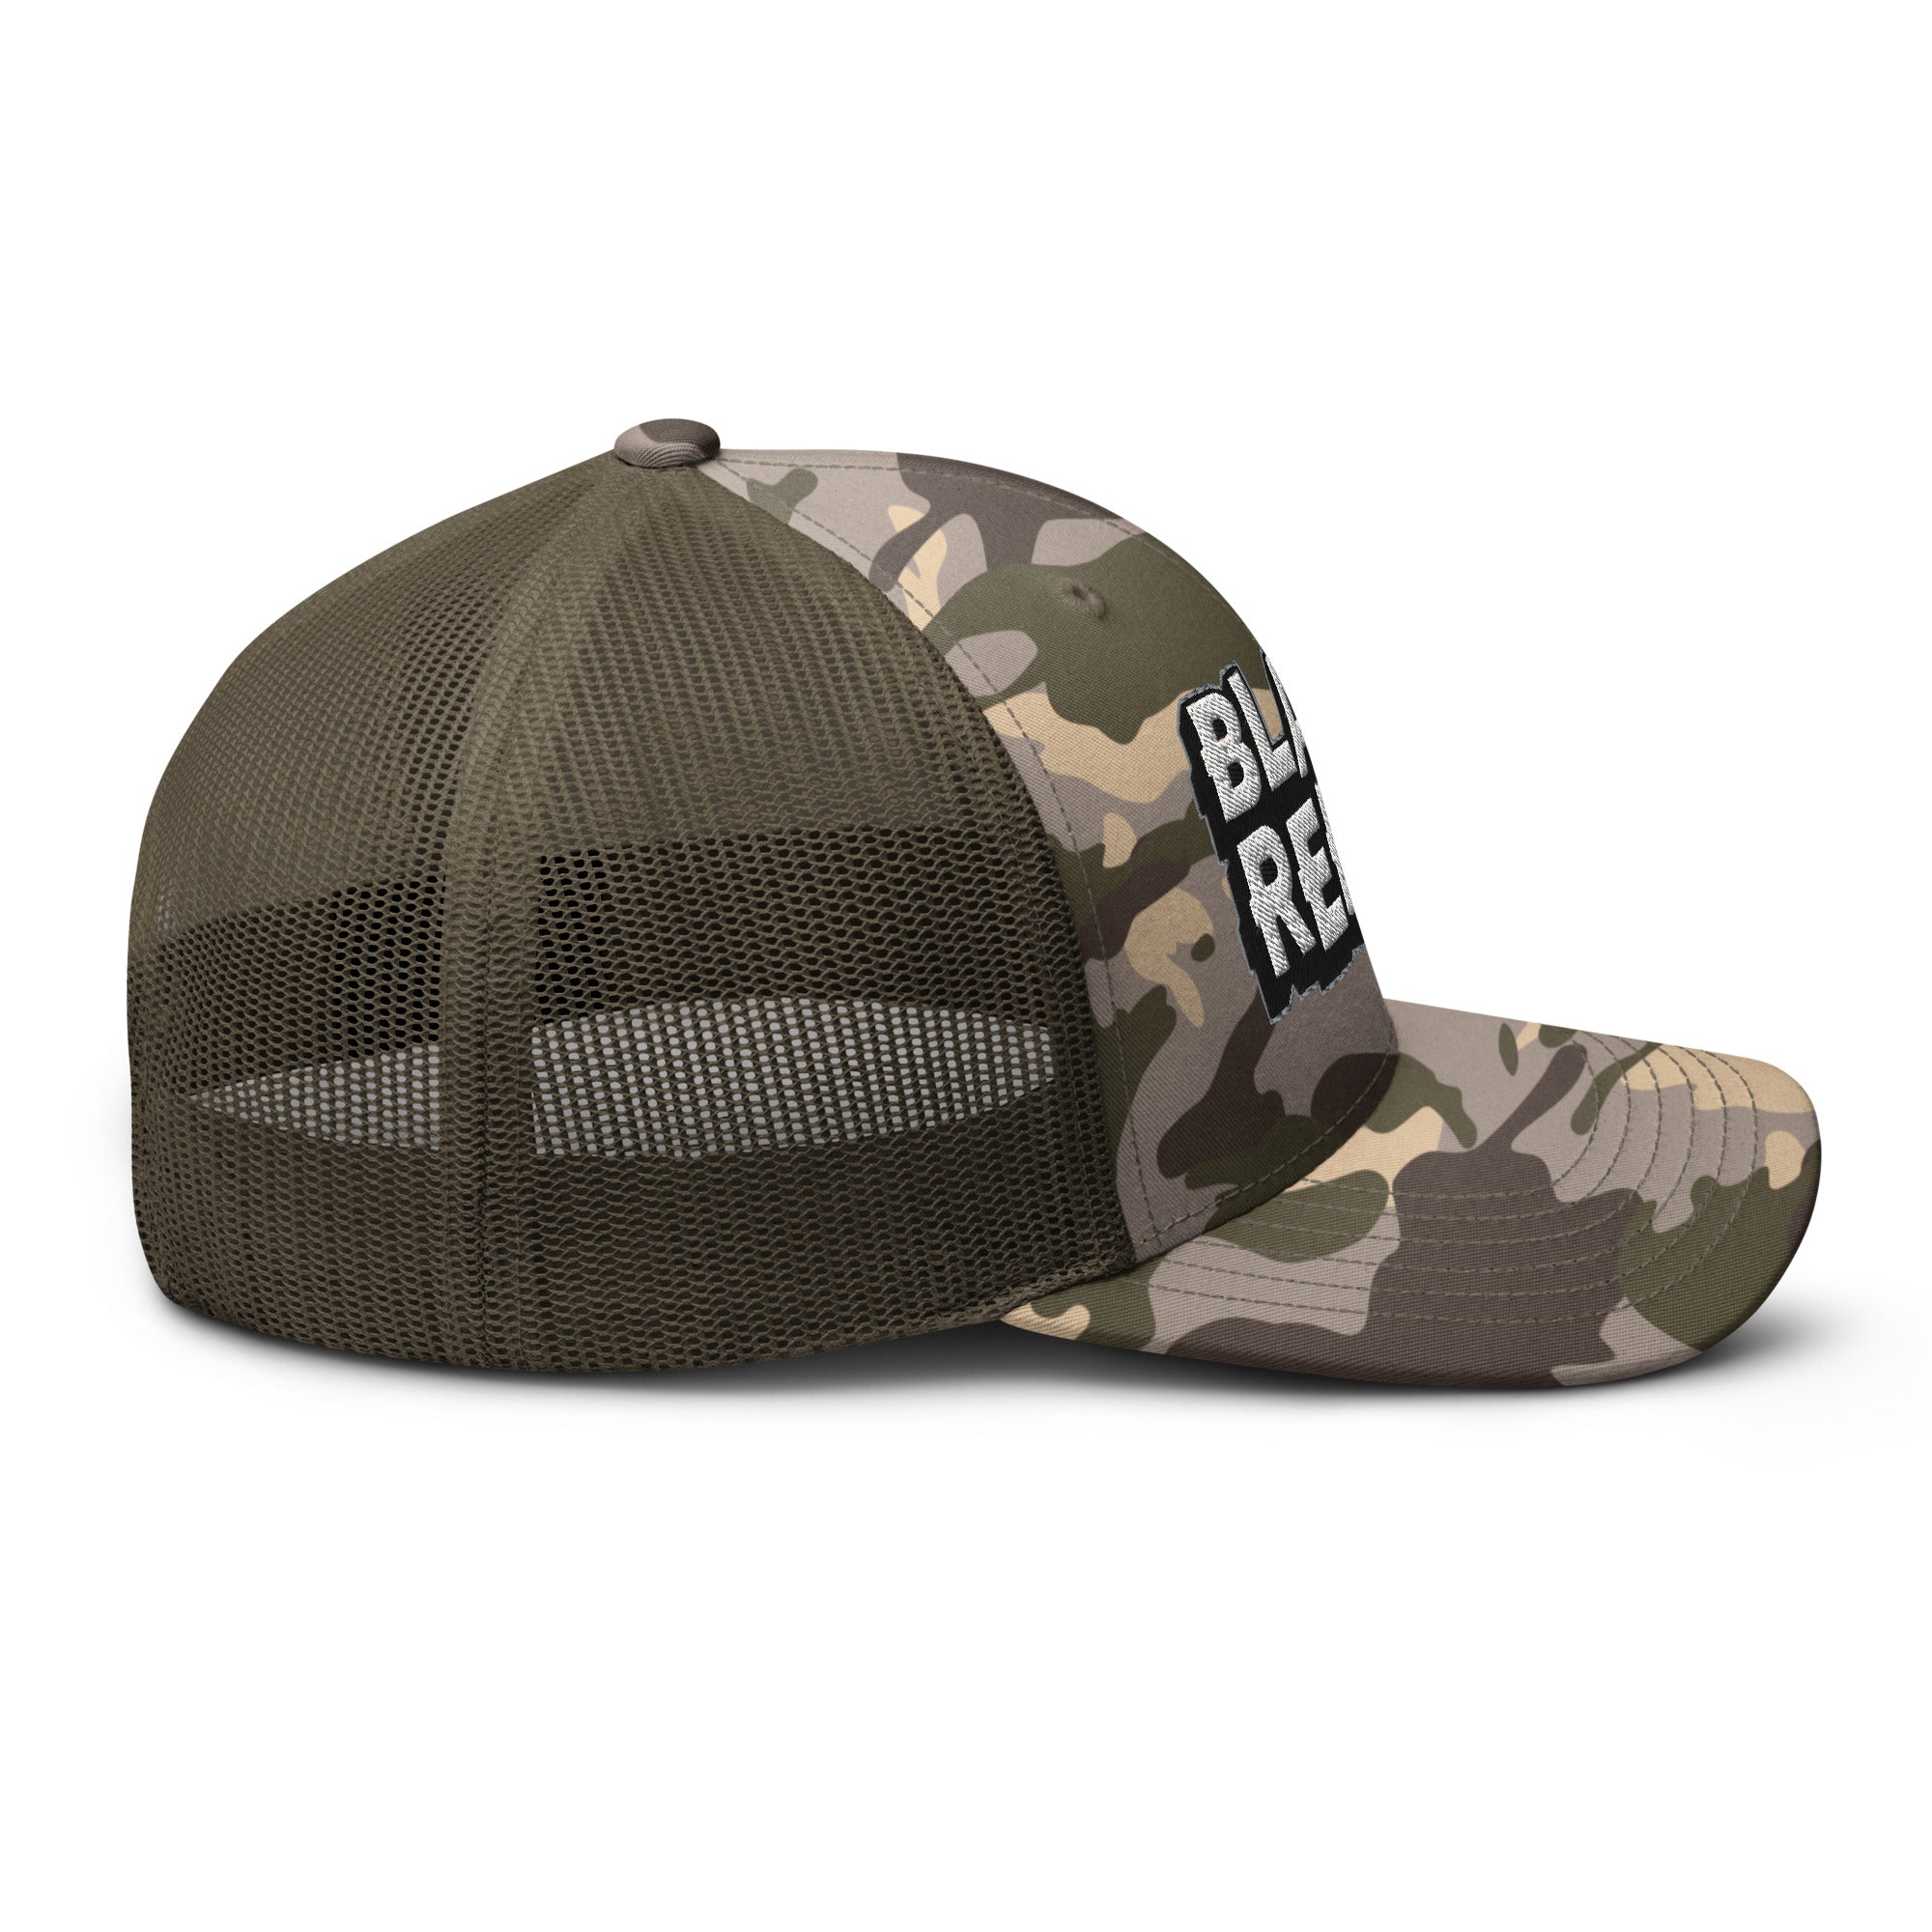 BRBC Camouflage trucker hat